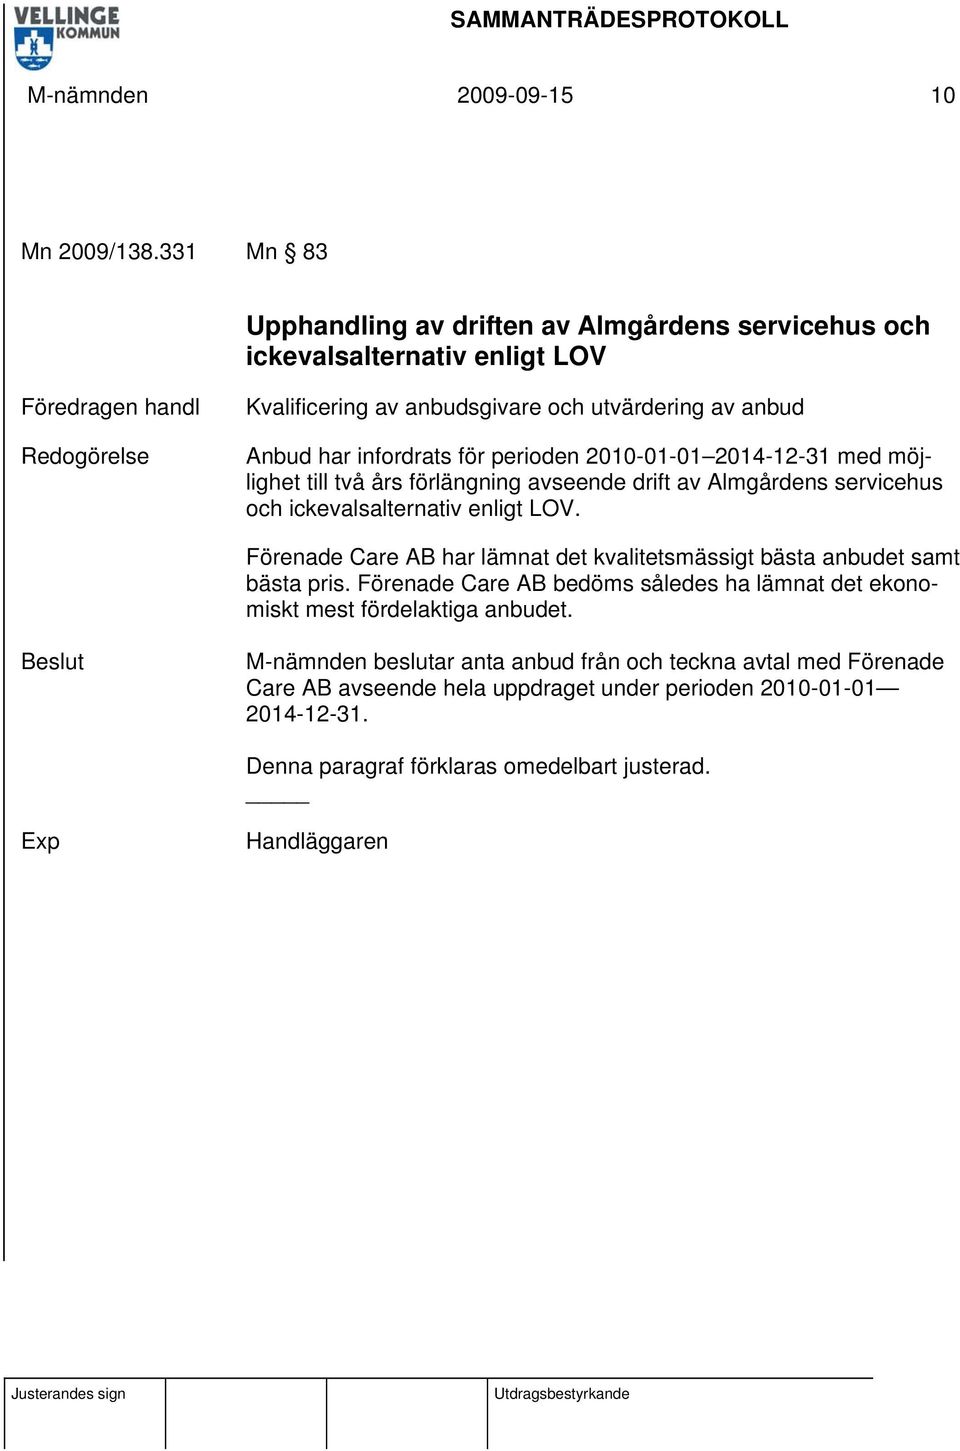 har infordrats för perioden 2010-01-01 2014-12-31 med möjlighet till två års förlängning avseende drift av Almgårdens servicehus och ickevalsalternativ enligt LOV.